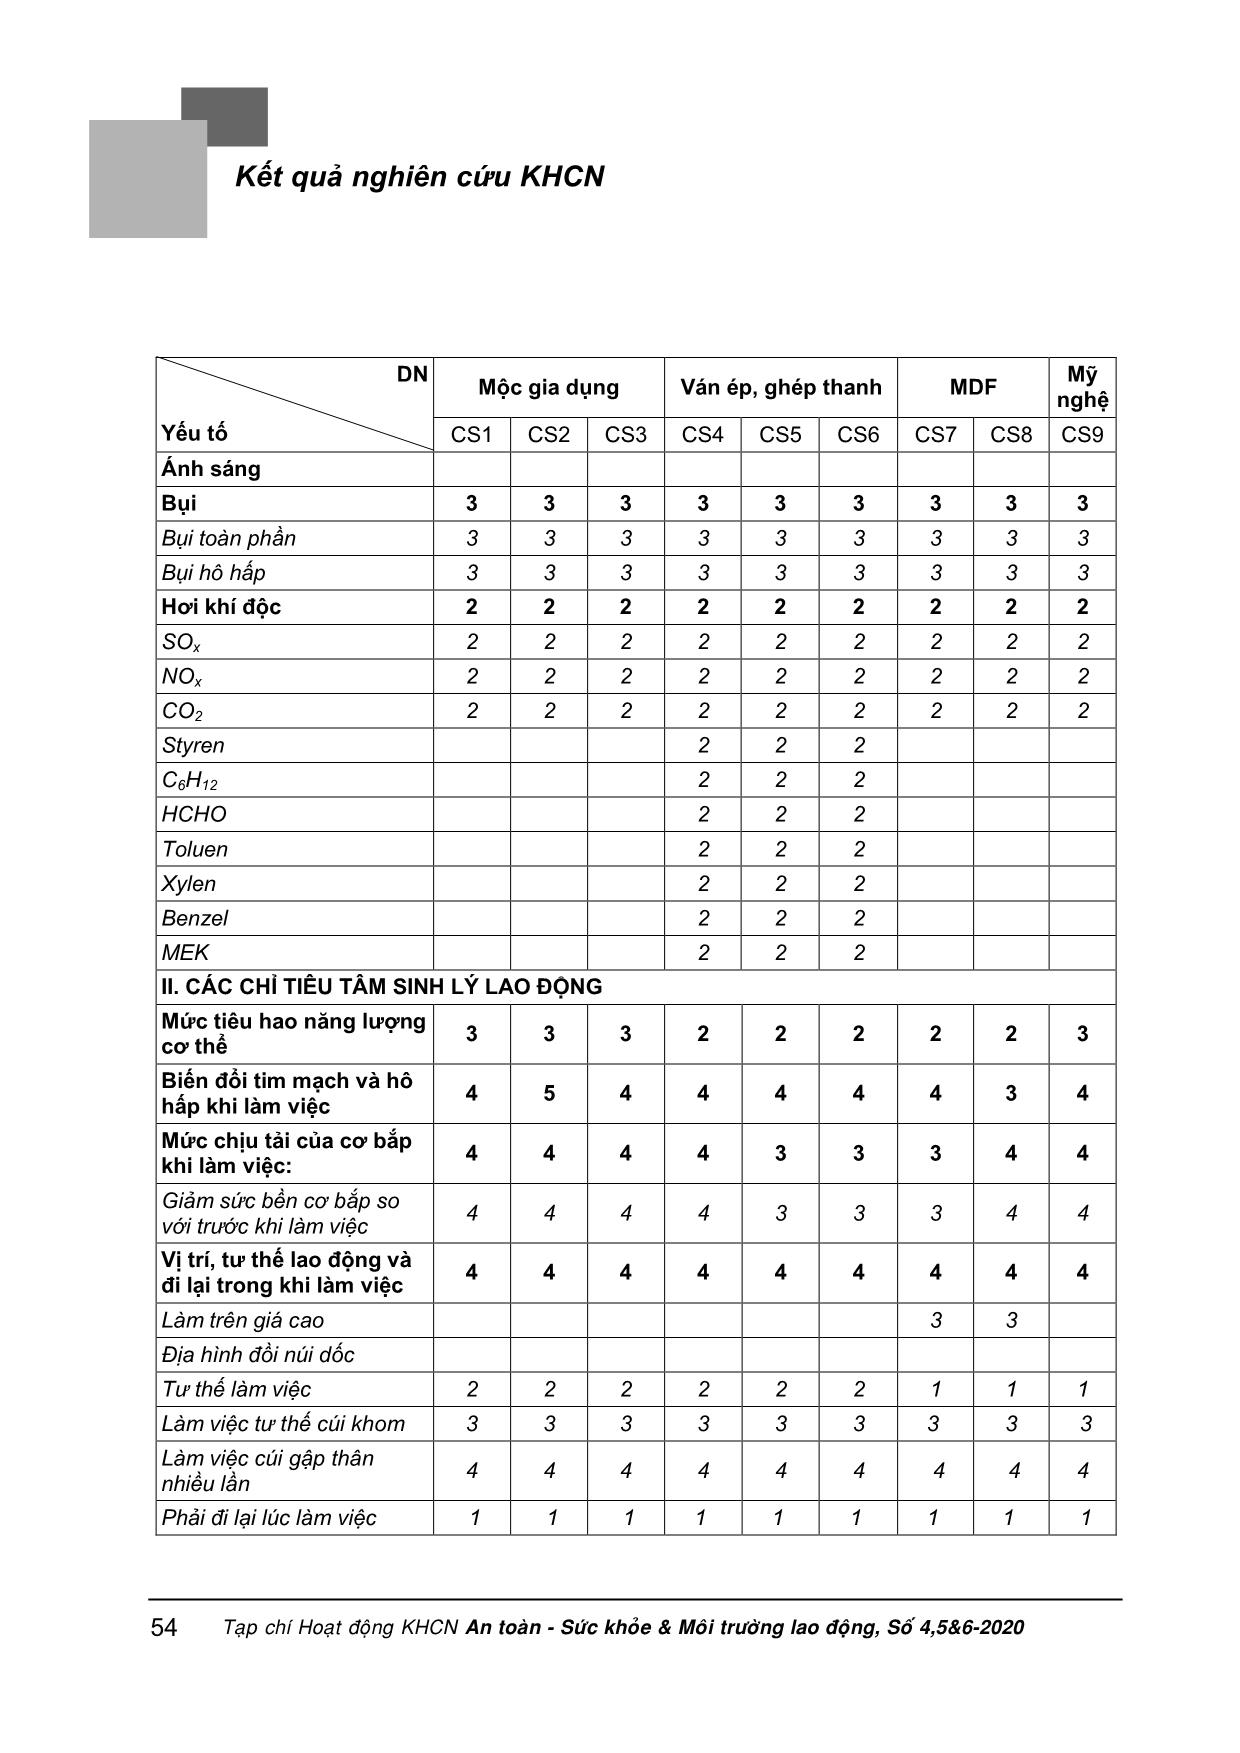 Đánh giá điều kiện lao động tại một số cơ sở chế biến gỗ khu vực miền Trung theo phương pháp của bộ lao động thương binh và xã hội và so sánh với kết quả đánh giá theo phương pháp VNNIOSH-2017 trang 4